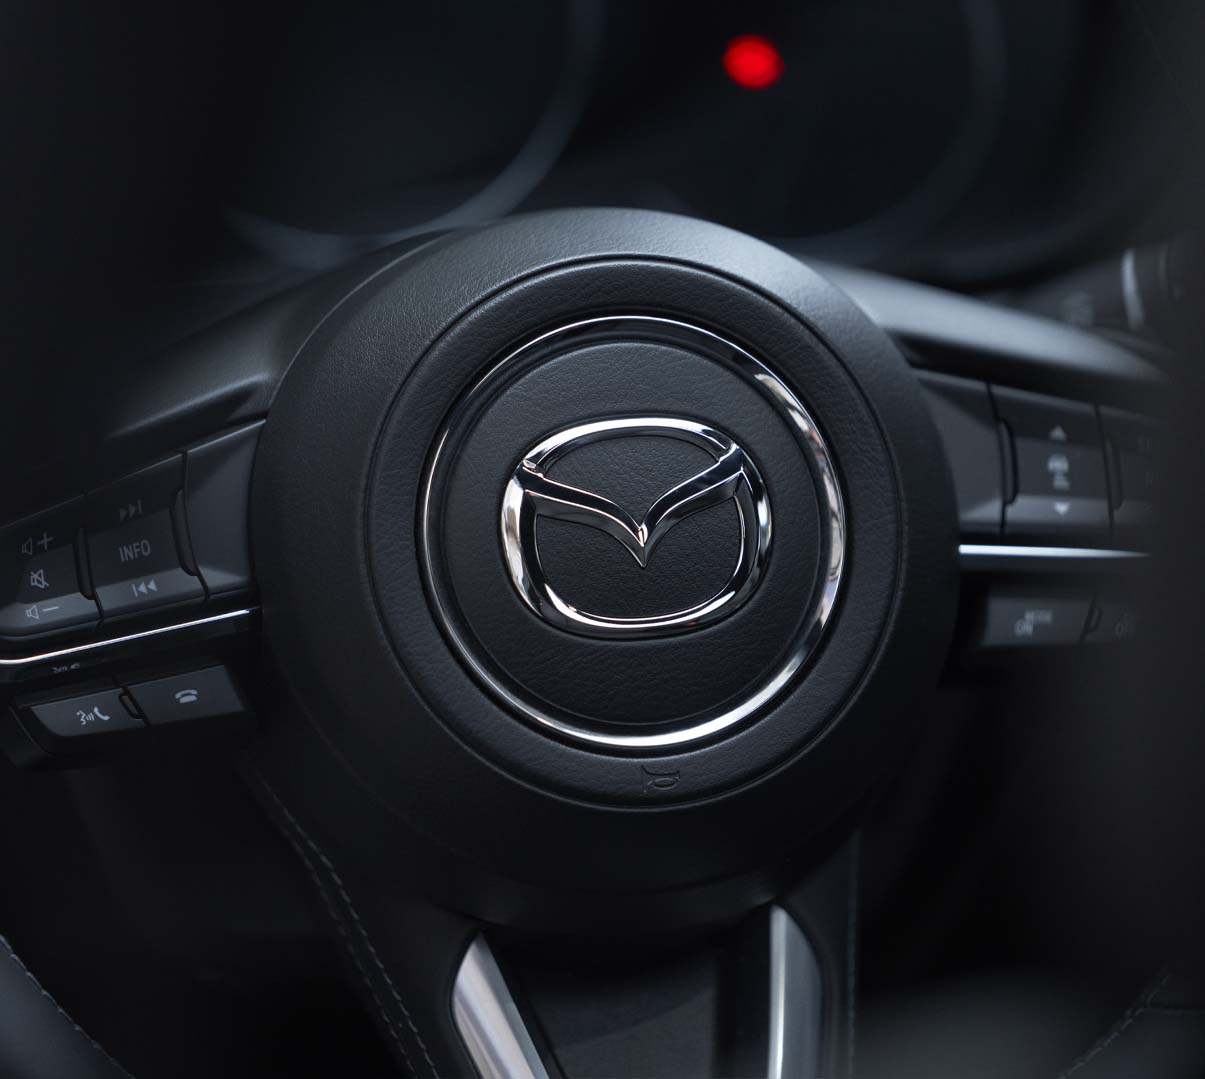 Dettagli del design interno | Mazda CX-5 | Brochure digitale